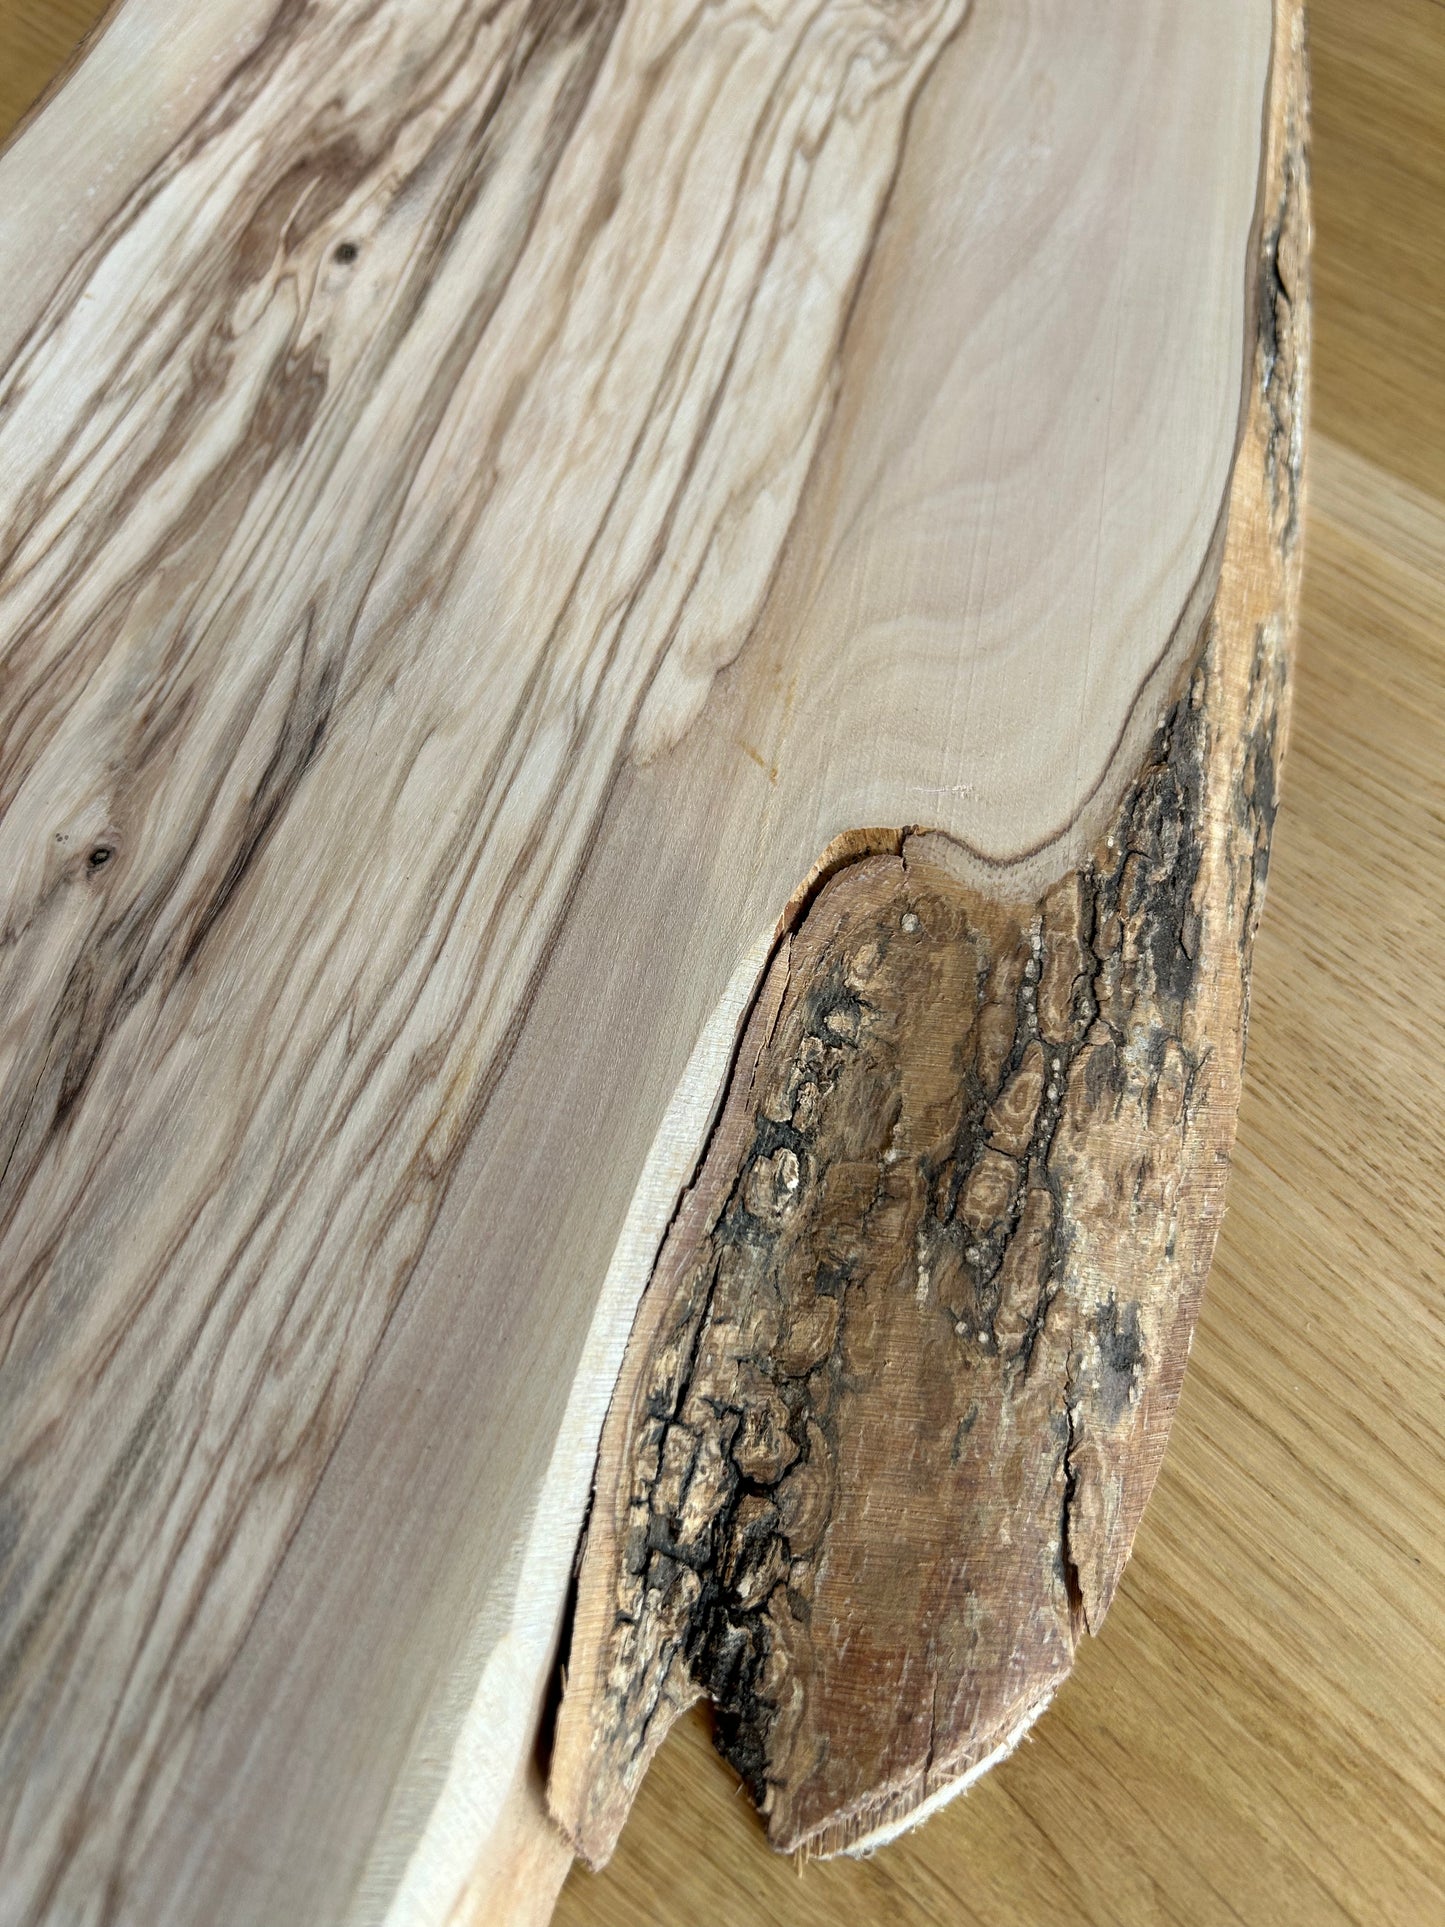 Tagliere in legno di ulivo - Made in Blasi